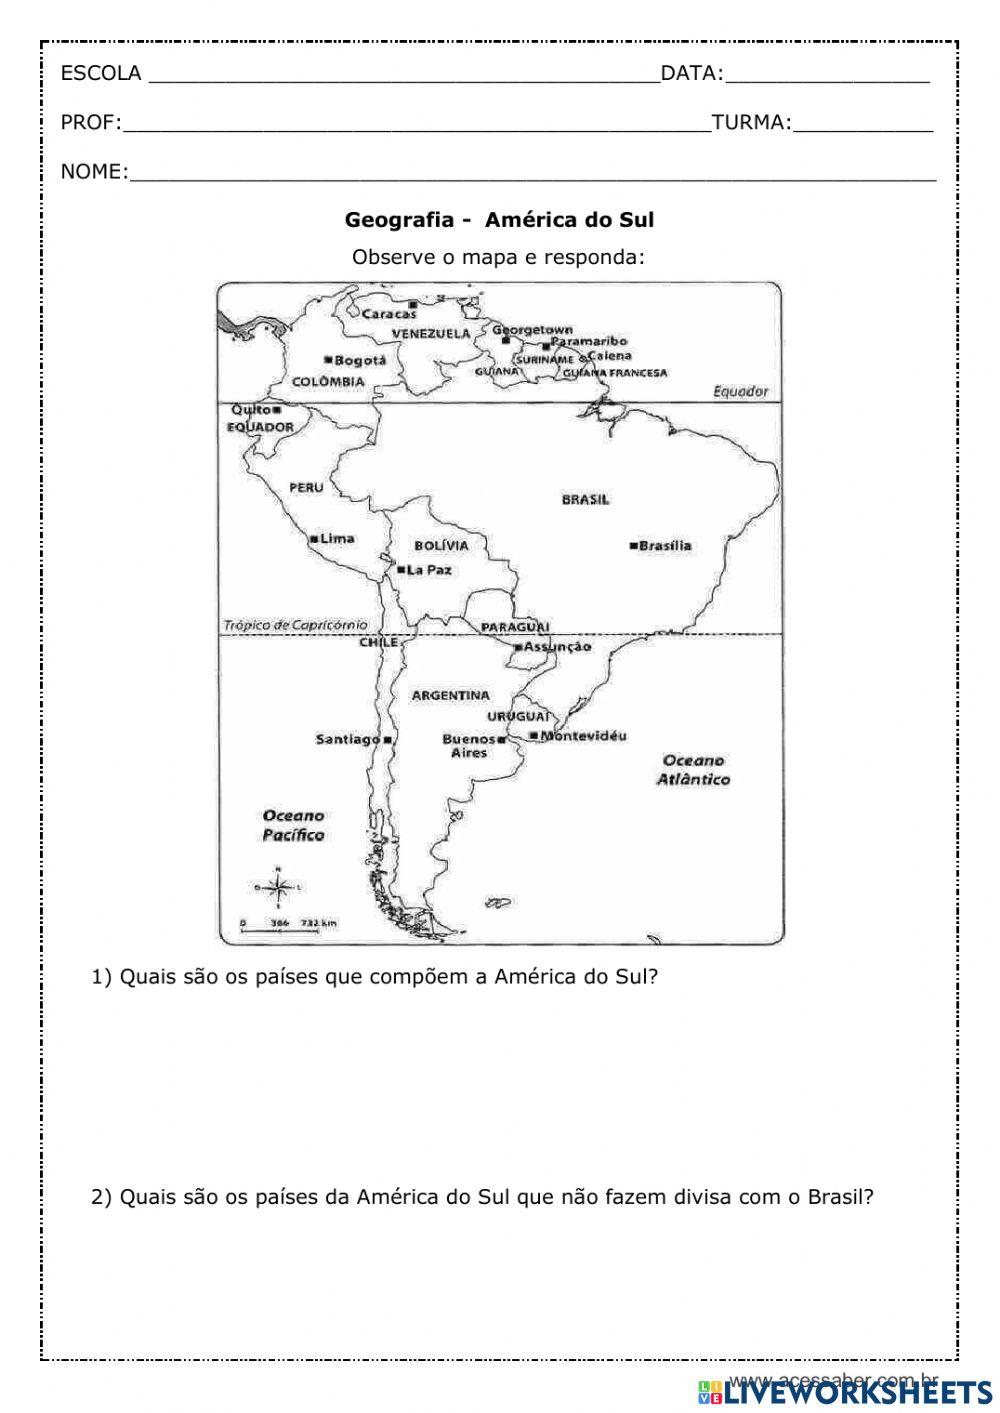 Atividades com o mapa da América do Sul